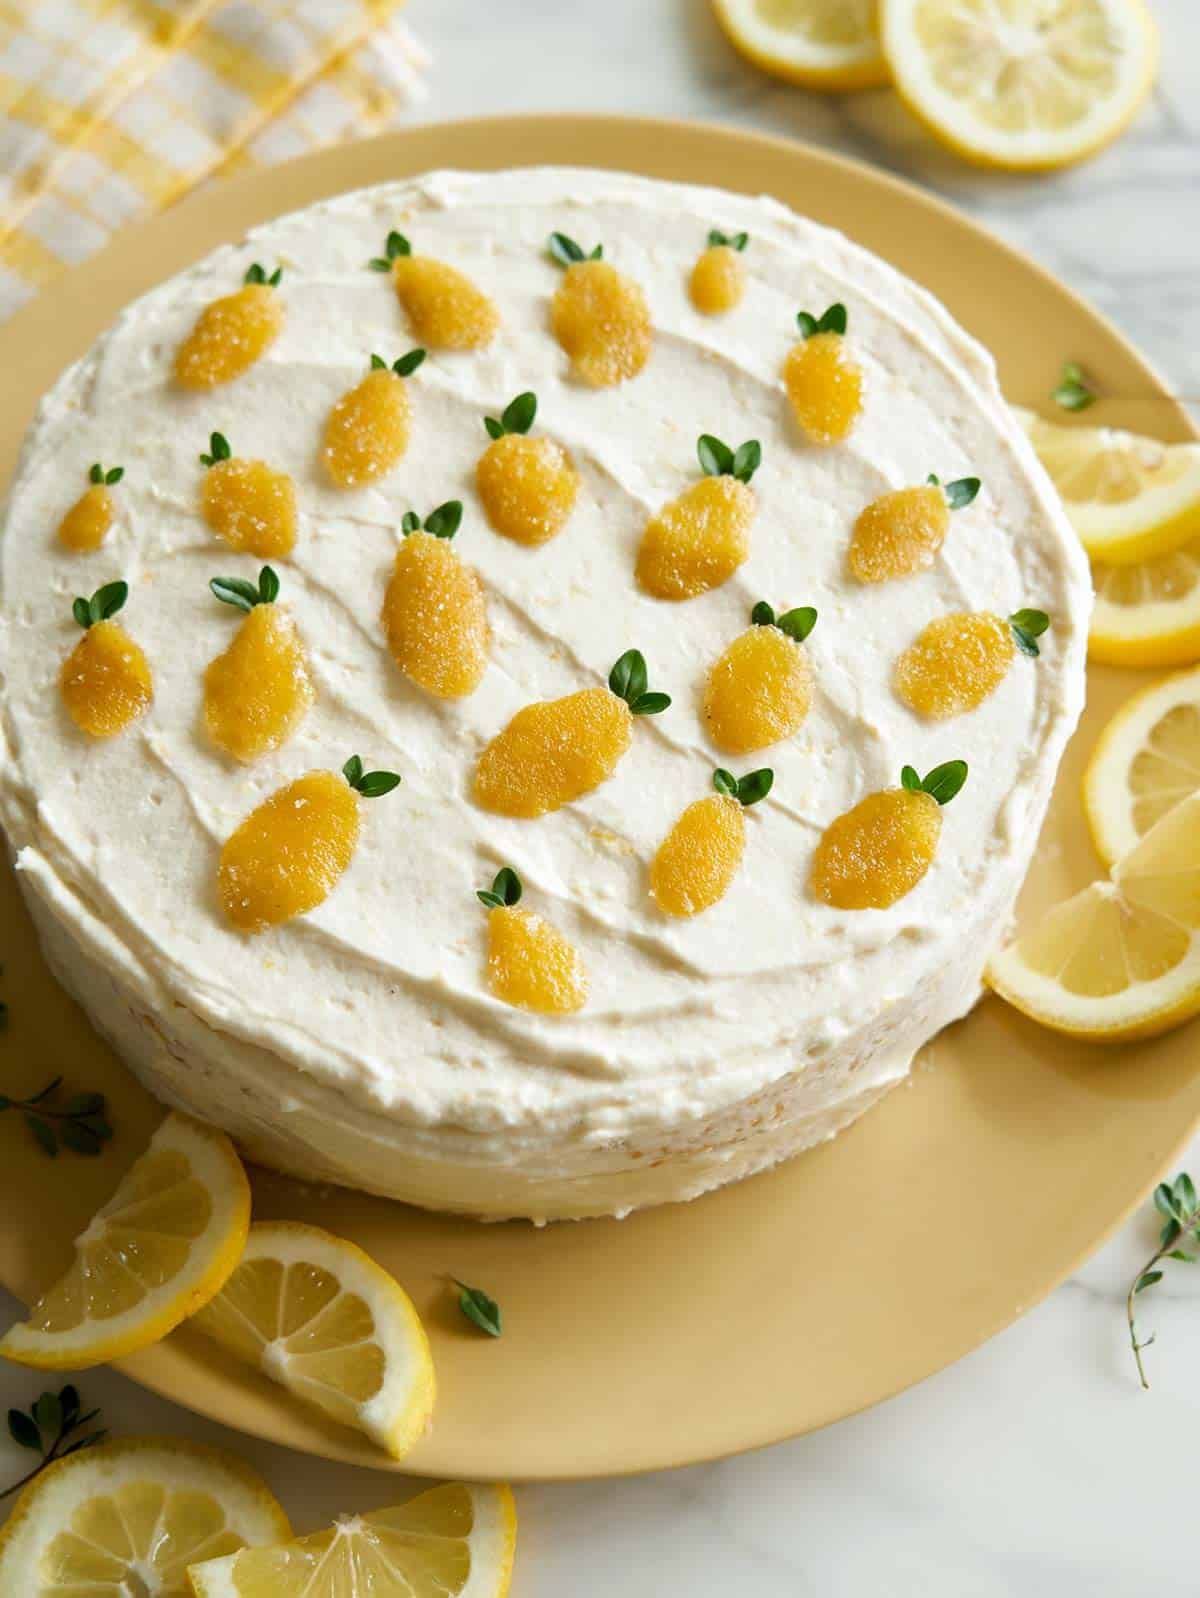 25 Best Lemon Dessert Recipes - Easy Lemon Dessert Ideas